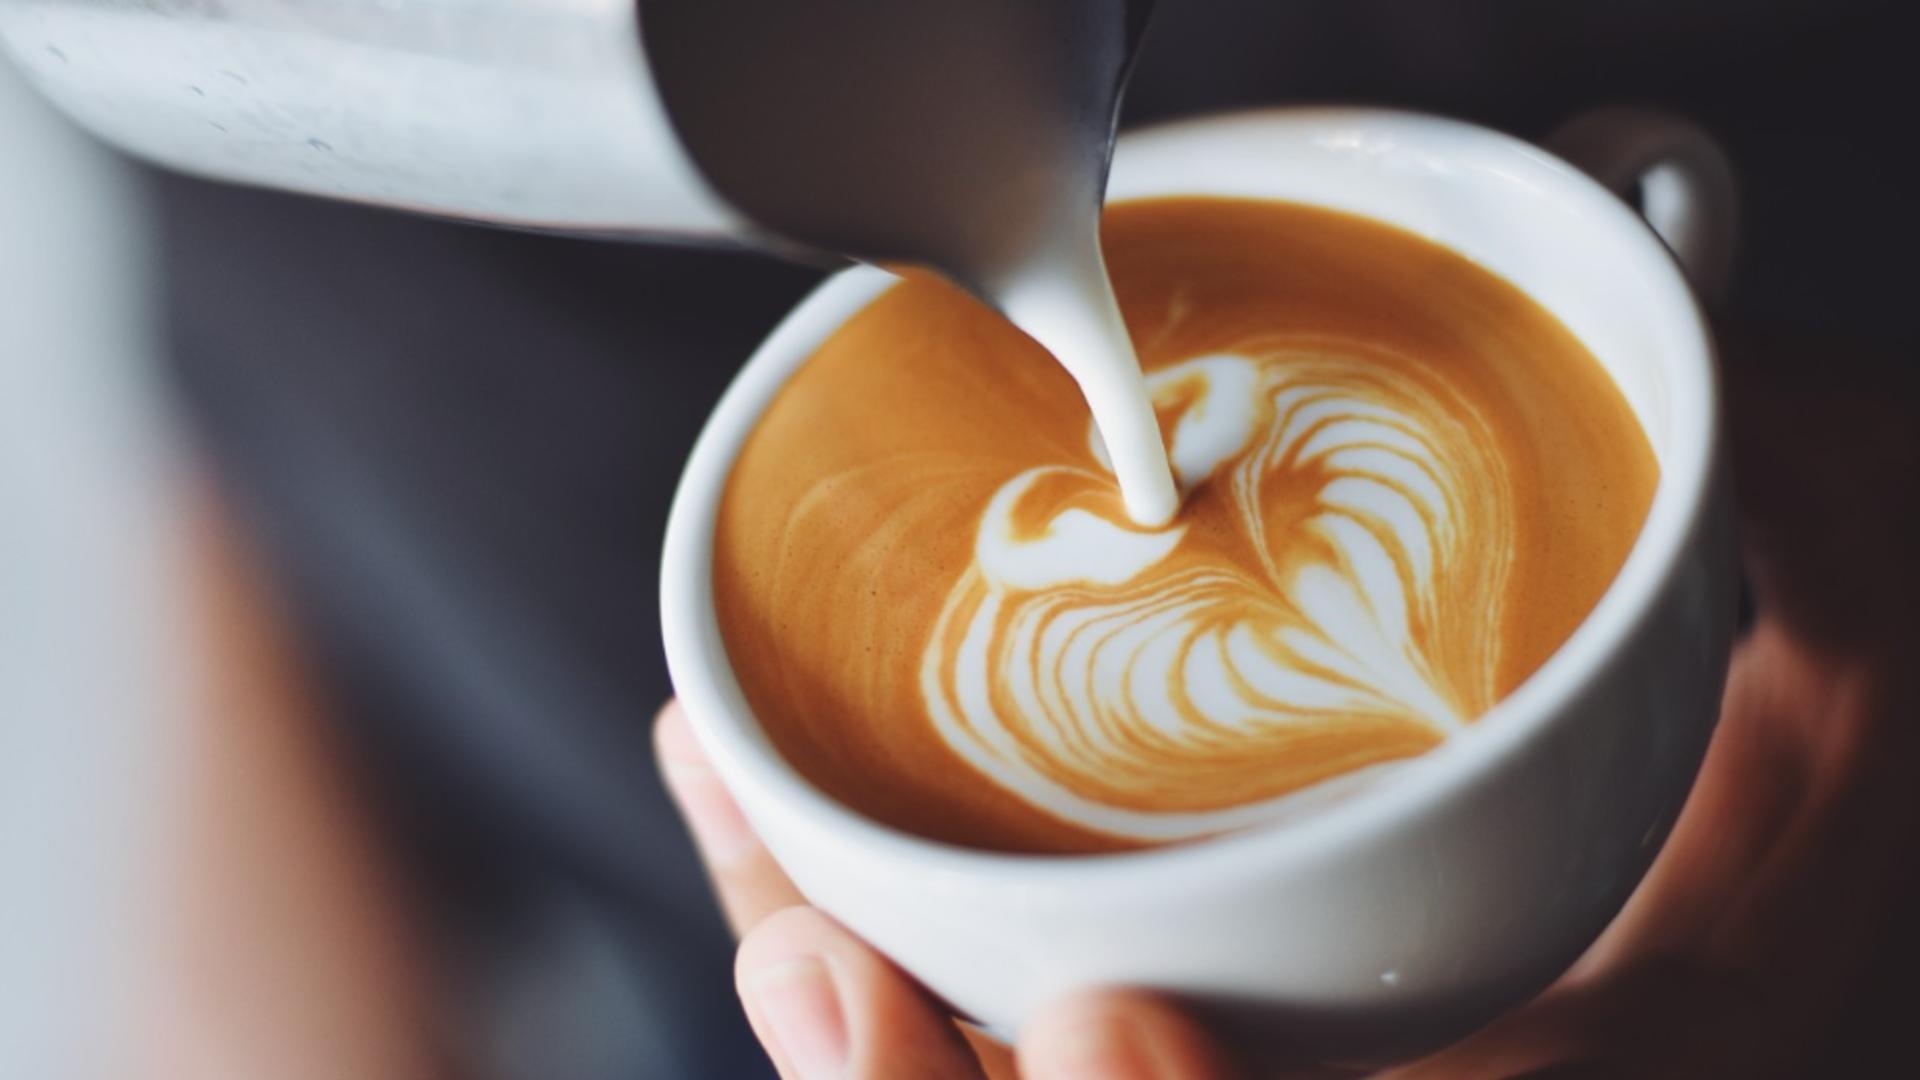 Cafeaua cu lapte poate fi un adevărat elicxir pentru sănătate, concluzionează un studiu danez